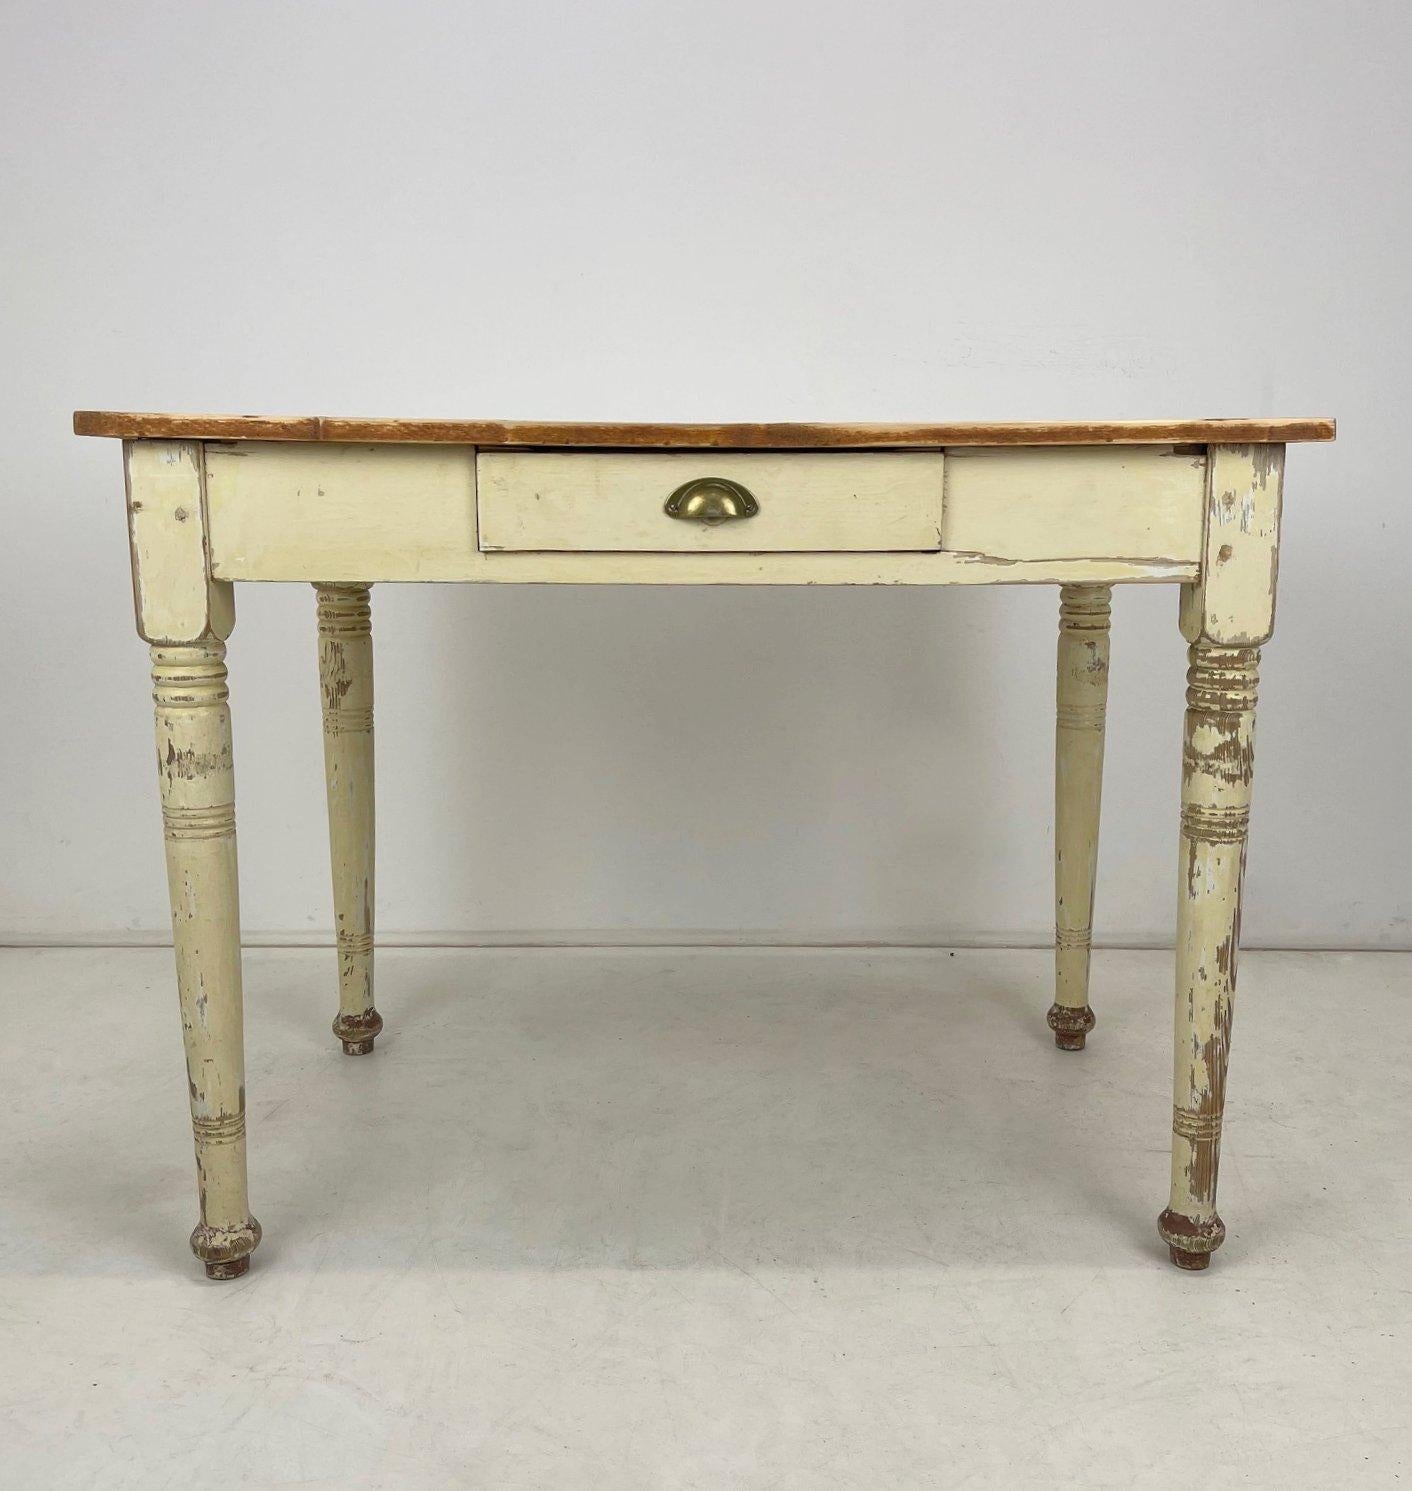 Schöner Tisch oder Schreibtisch aus dem frühen 20. Jahrhundert mit einer Schublade. Der gesamte Schreibtisch wurde geschliffen, insbesondere der obere Teil, und gewachst.